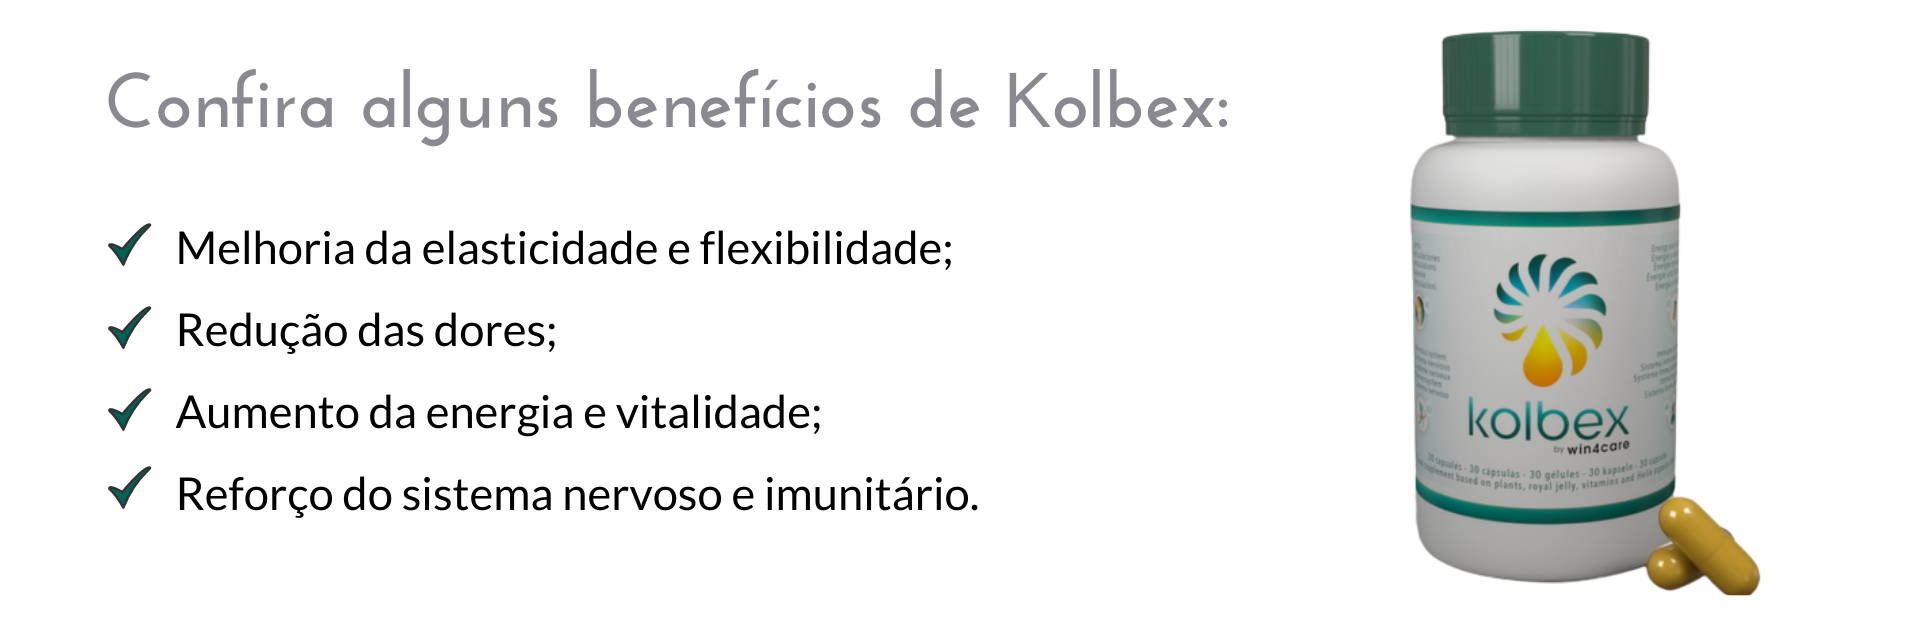 Kolbex melhora a elasticidade e flexibilidade; reduz as dores; aumenta a energia e italidade; reforça o sistema nervoso e imunitário.